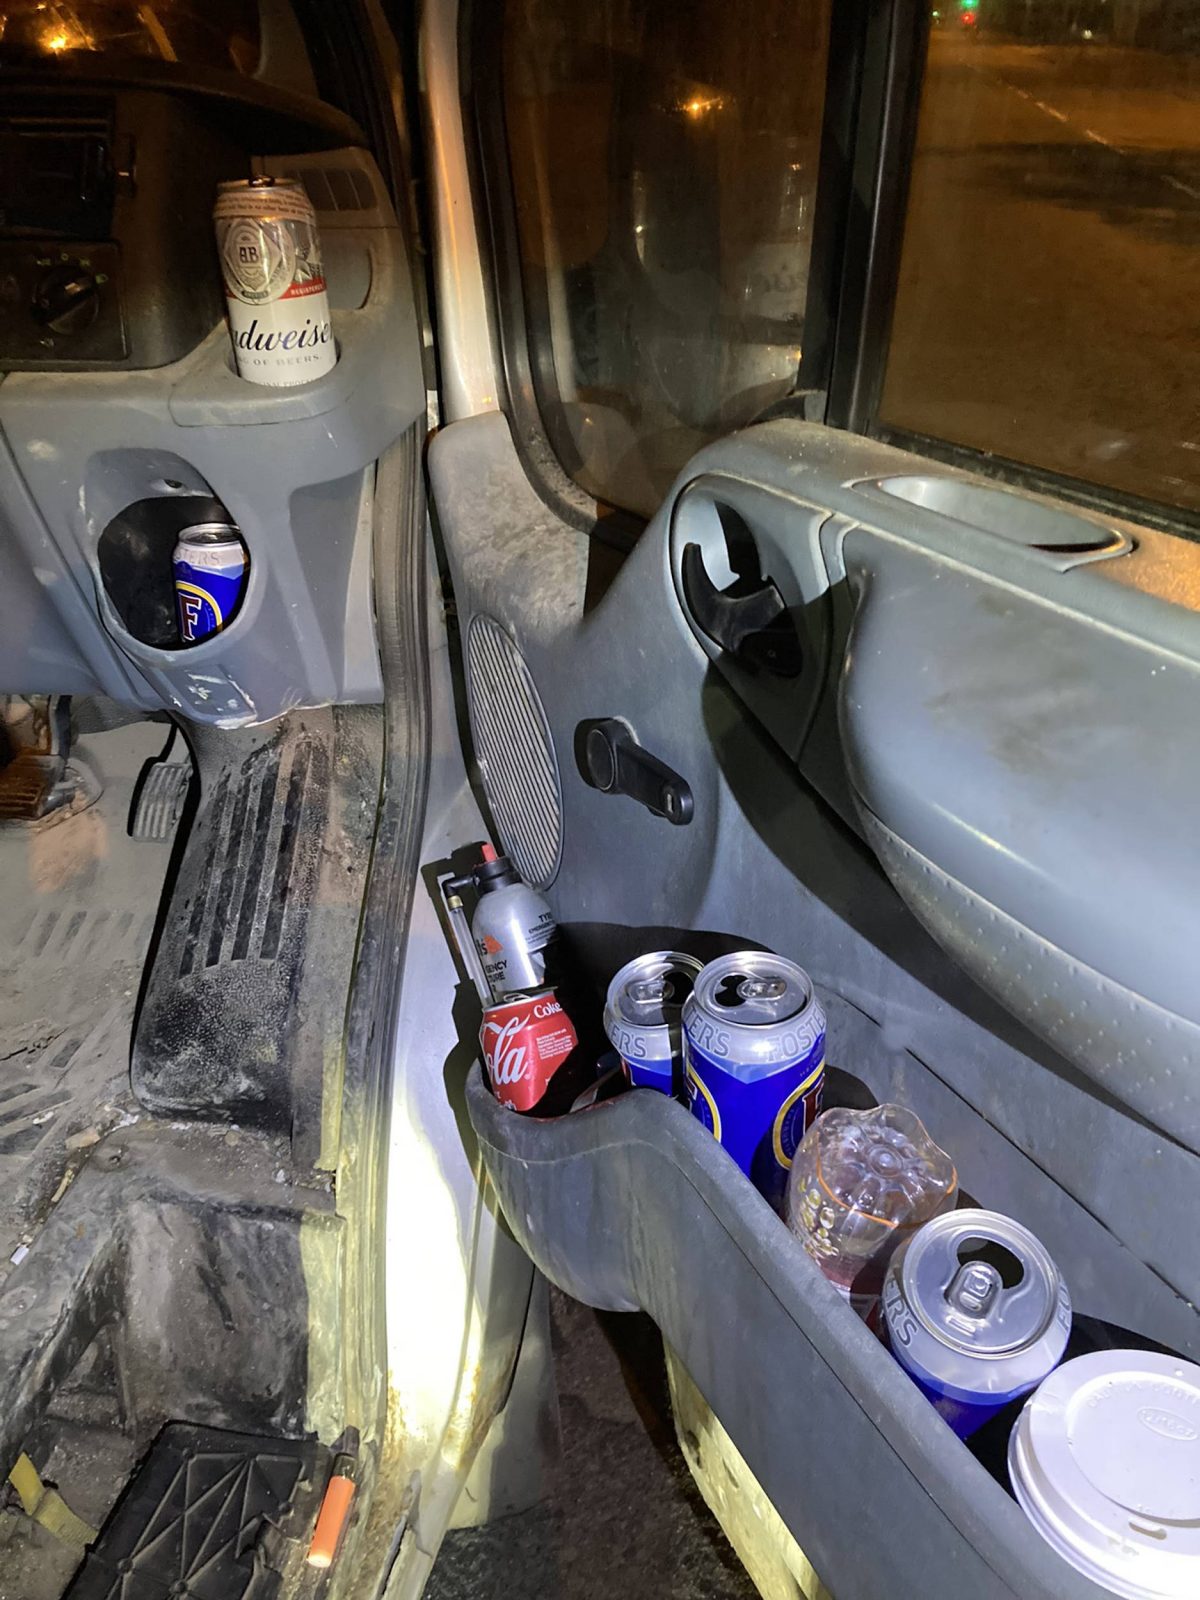 The van filled with empty beer